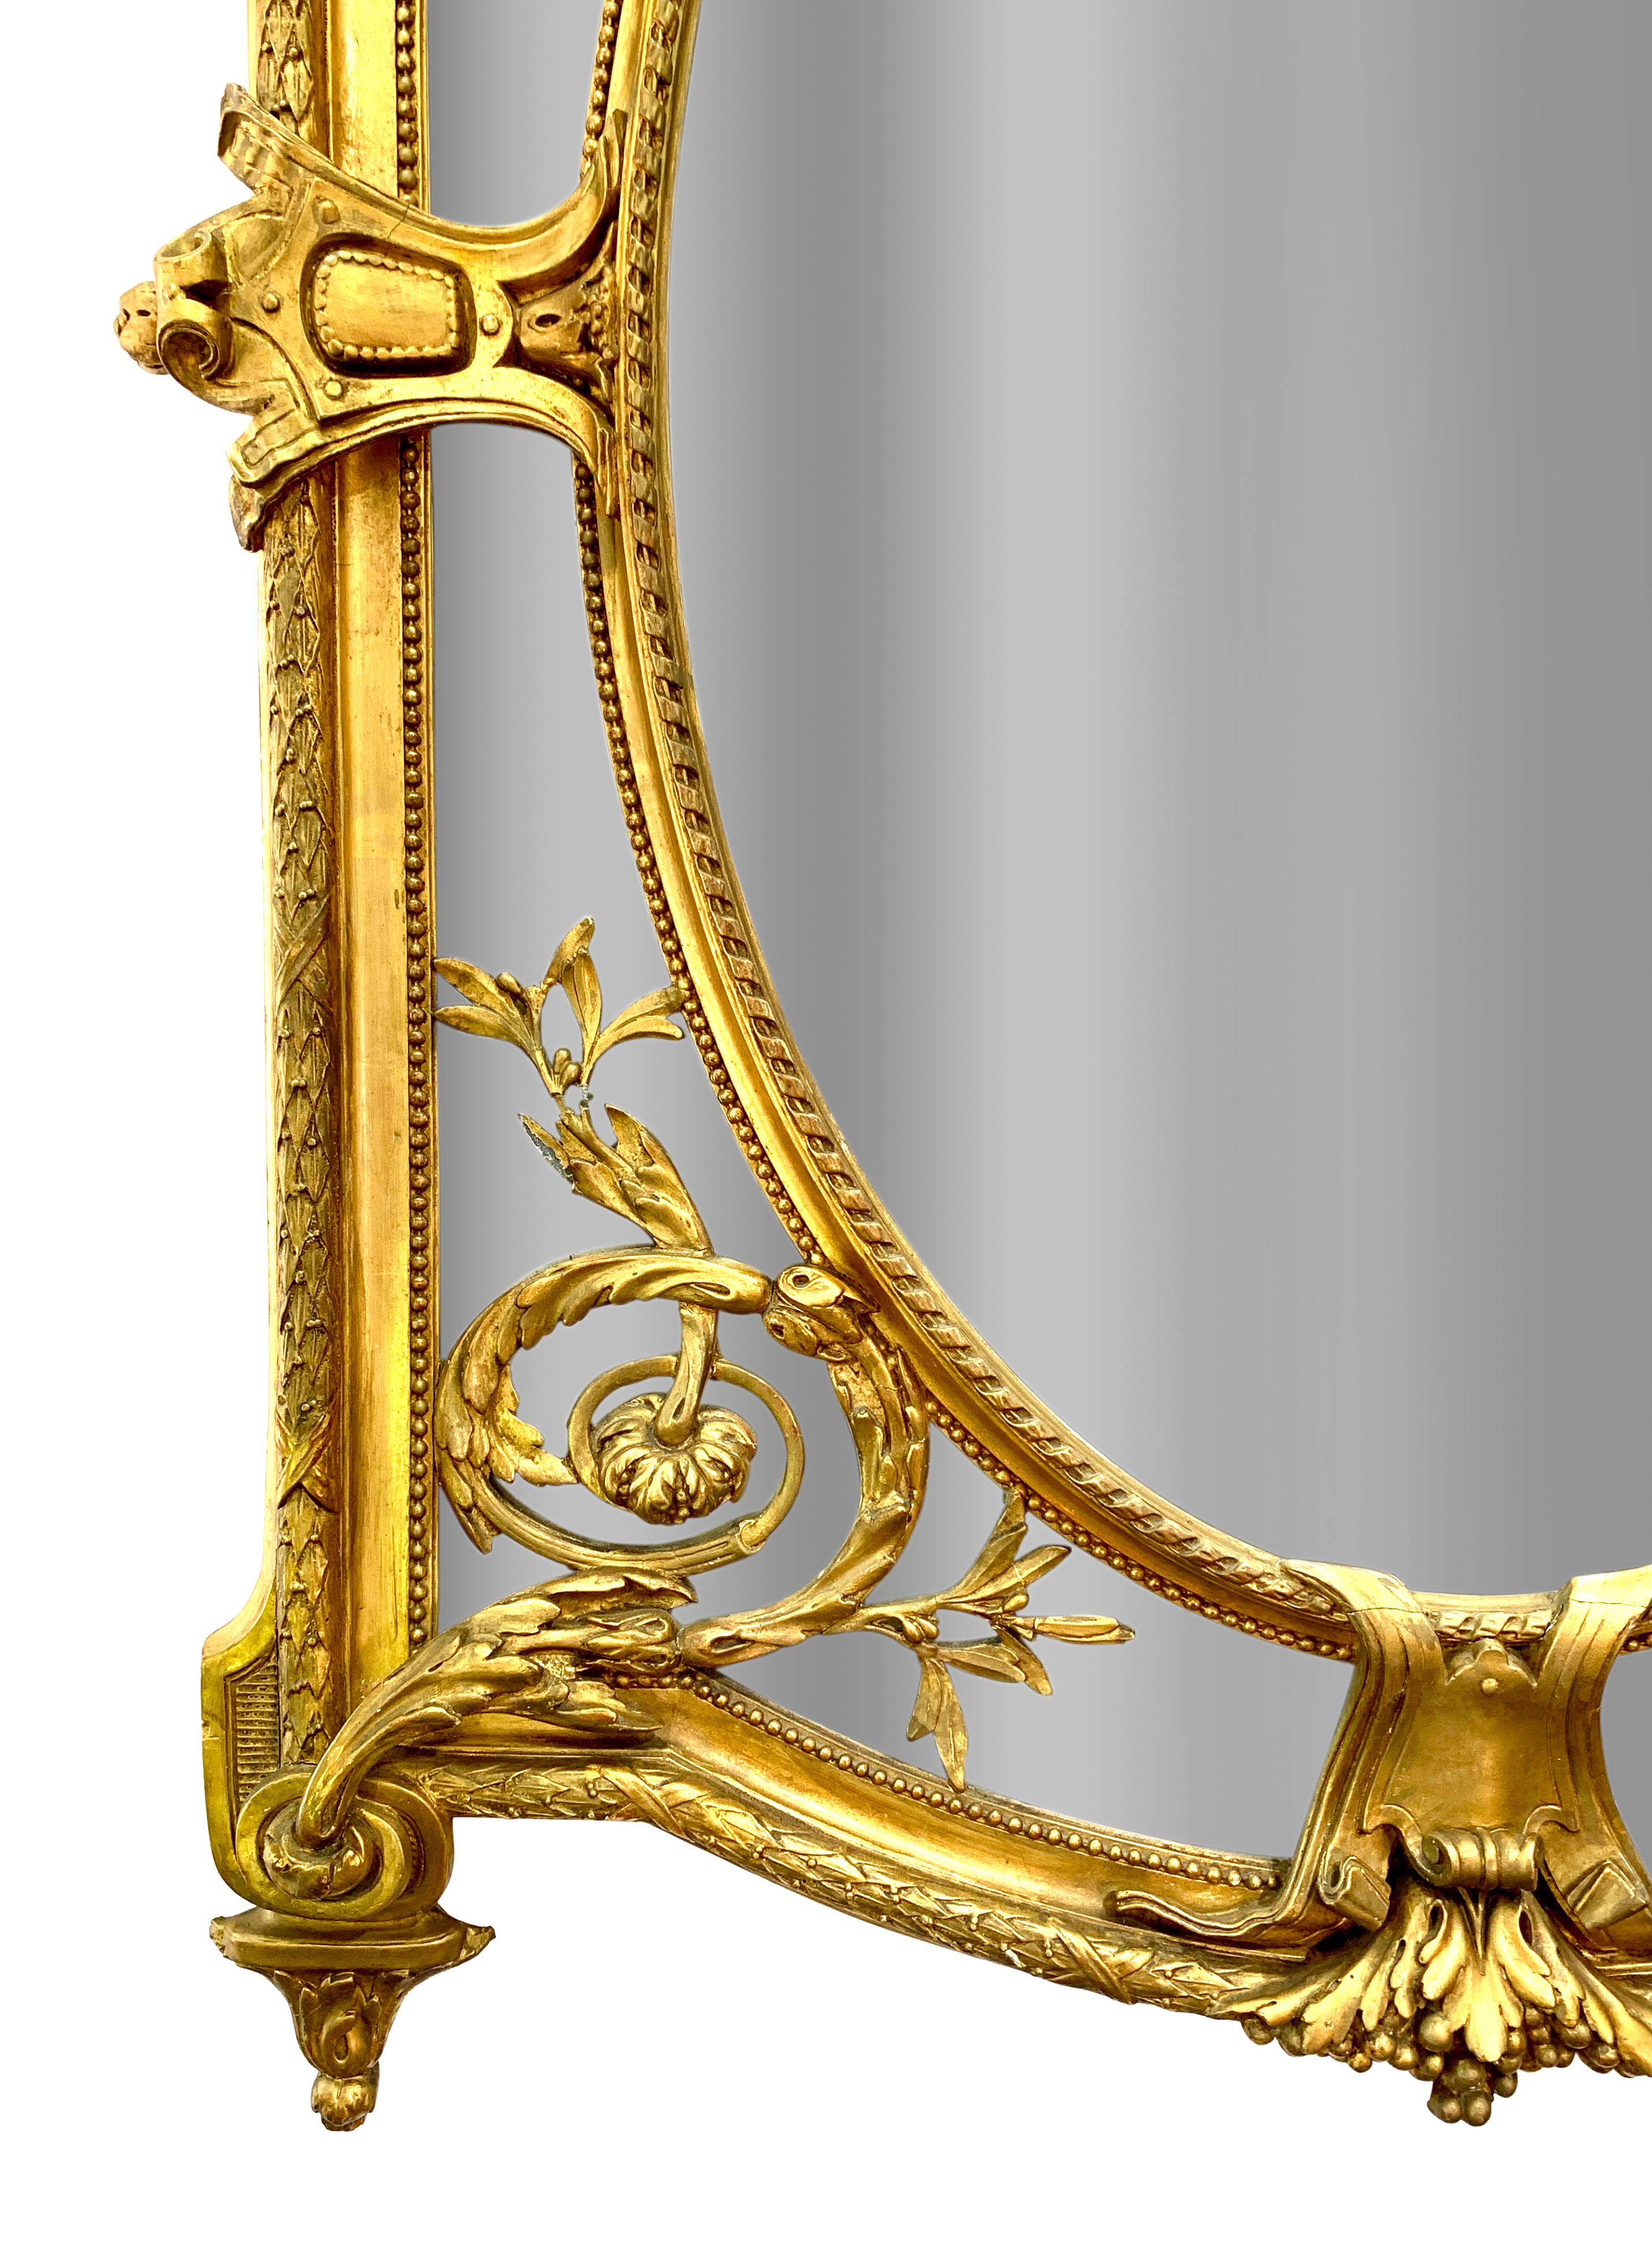 Exceptionnel miroir ancien français de style Louis XVI en bois doré et gesso. La plaque cintrée sous une crête élaborée d'ornements à volutes et de fleurs avec deux chérubins ailés magnifiquement sculptés soutenant une plaque centrale ovale avec un